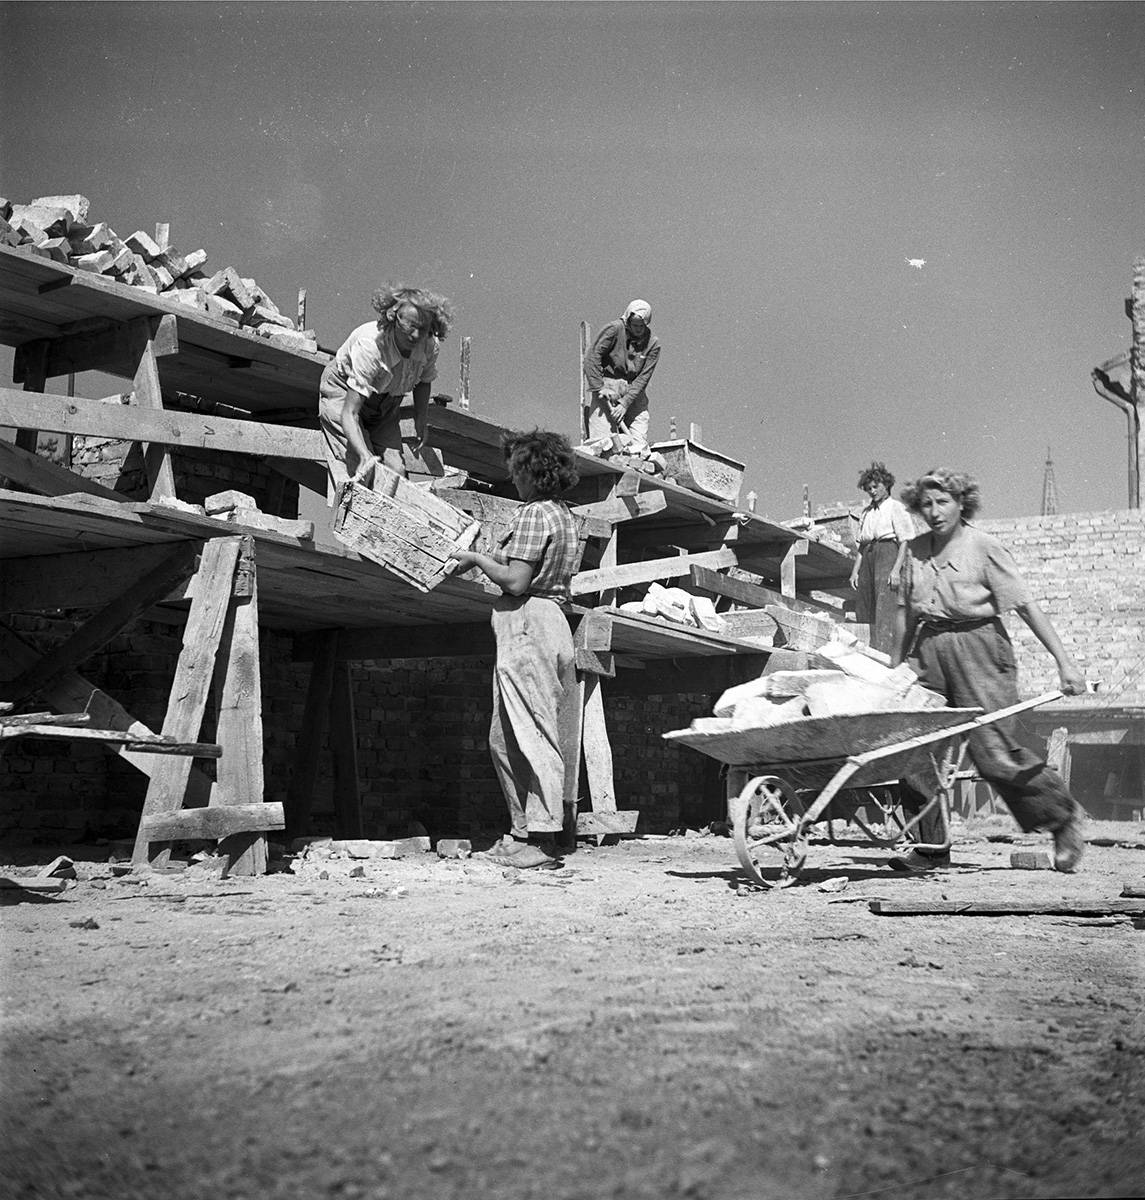 3)Brygada kobieca budująca blok mieszkalny. Widoczna robotnica przewożąca cegły na taczkach, fot. Siemaszko Zbyszko, NAC